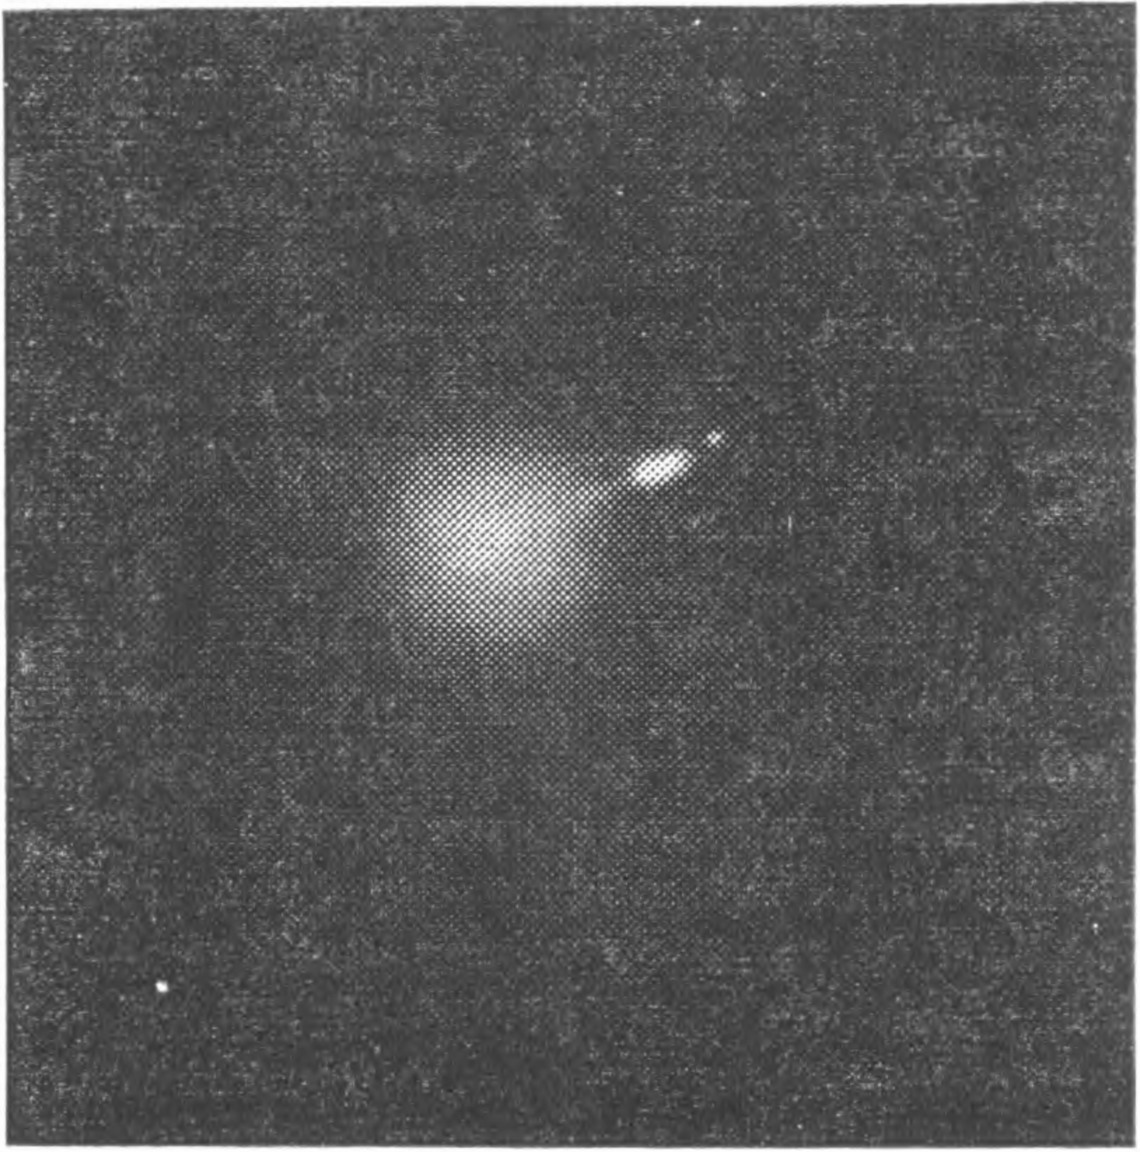 Рис. 194. Фотография центральной части радиогалактики M 87